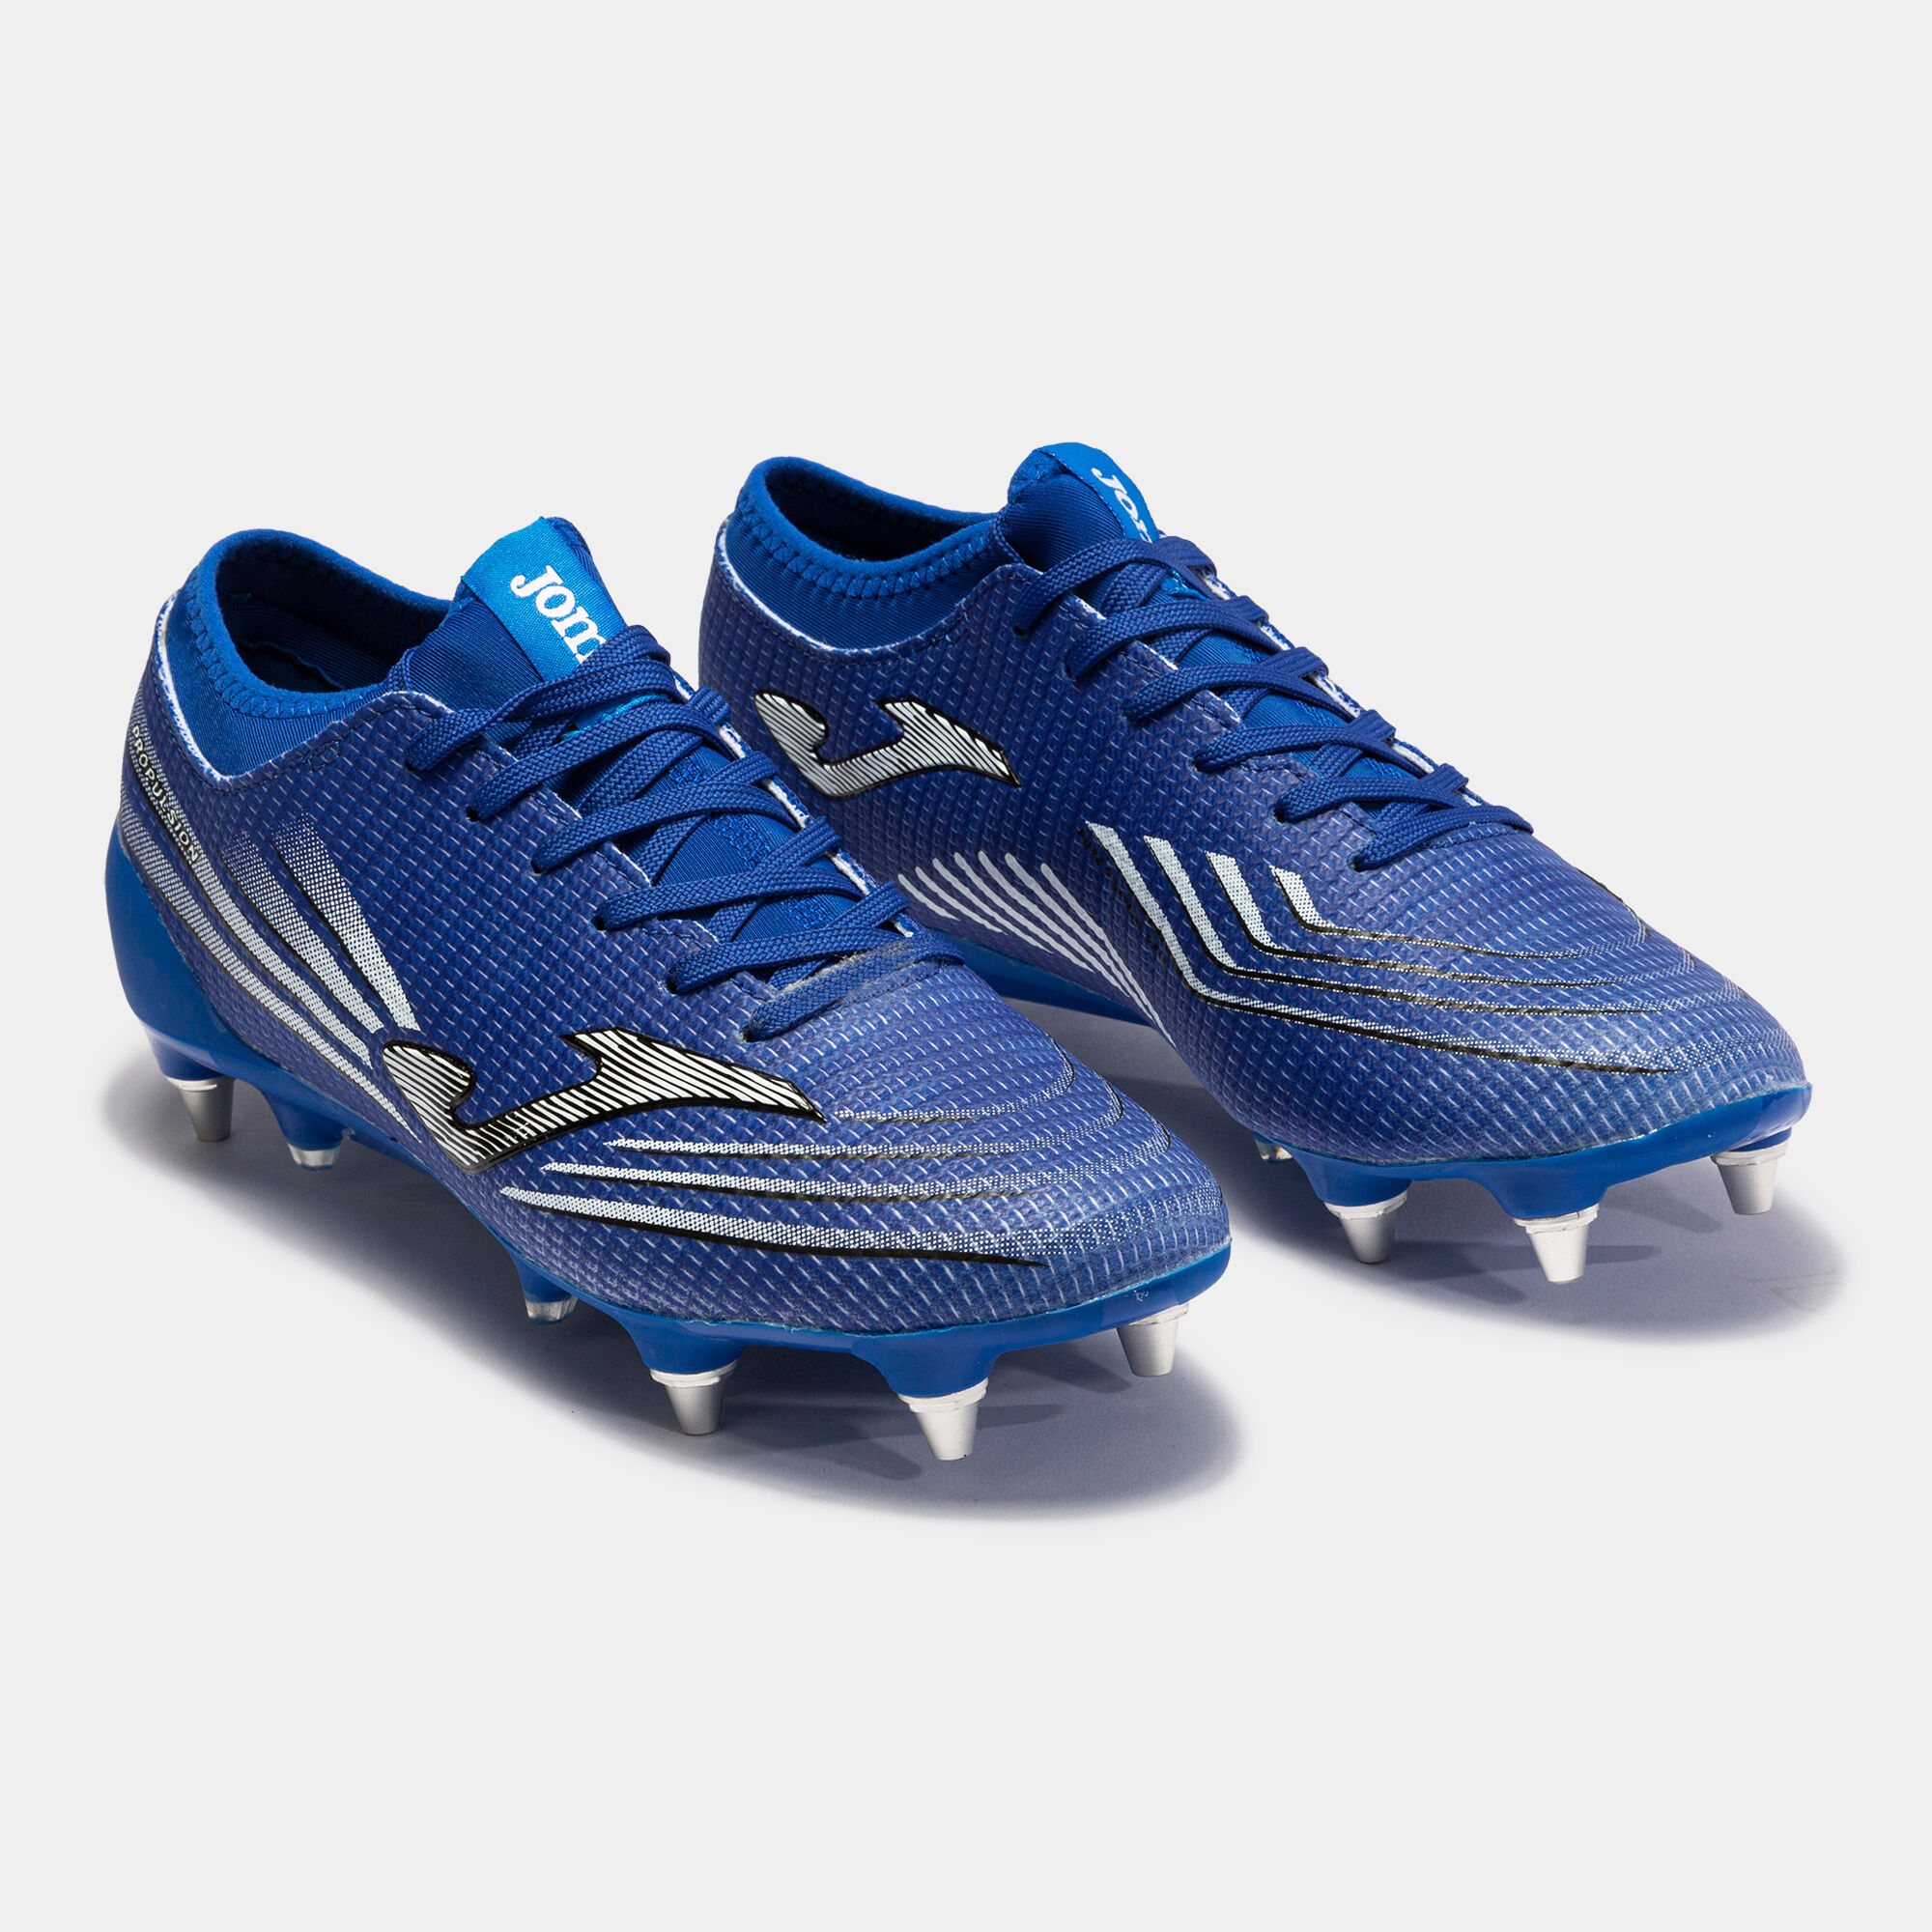 Buty piłkarskie Propulsion Lite 21 miękkie podłoże SG niebieski royal